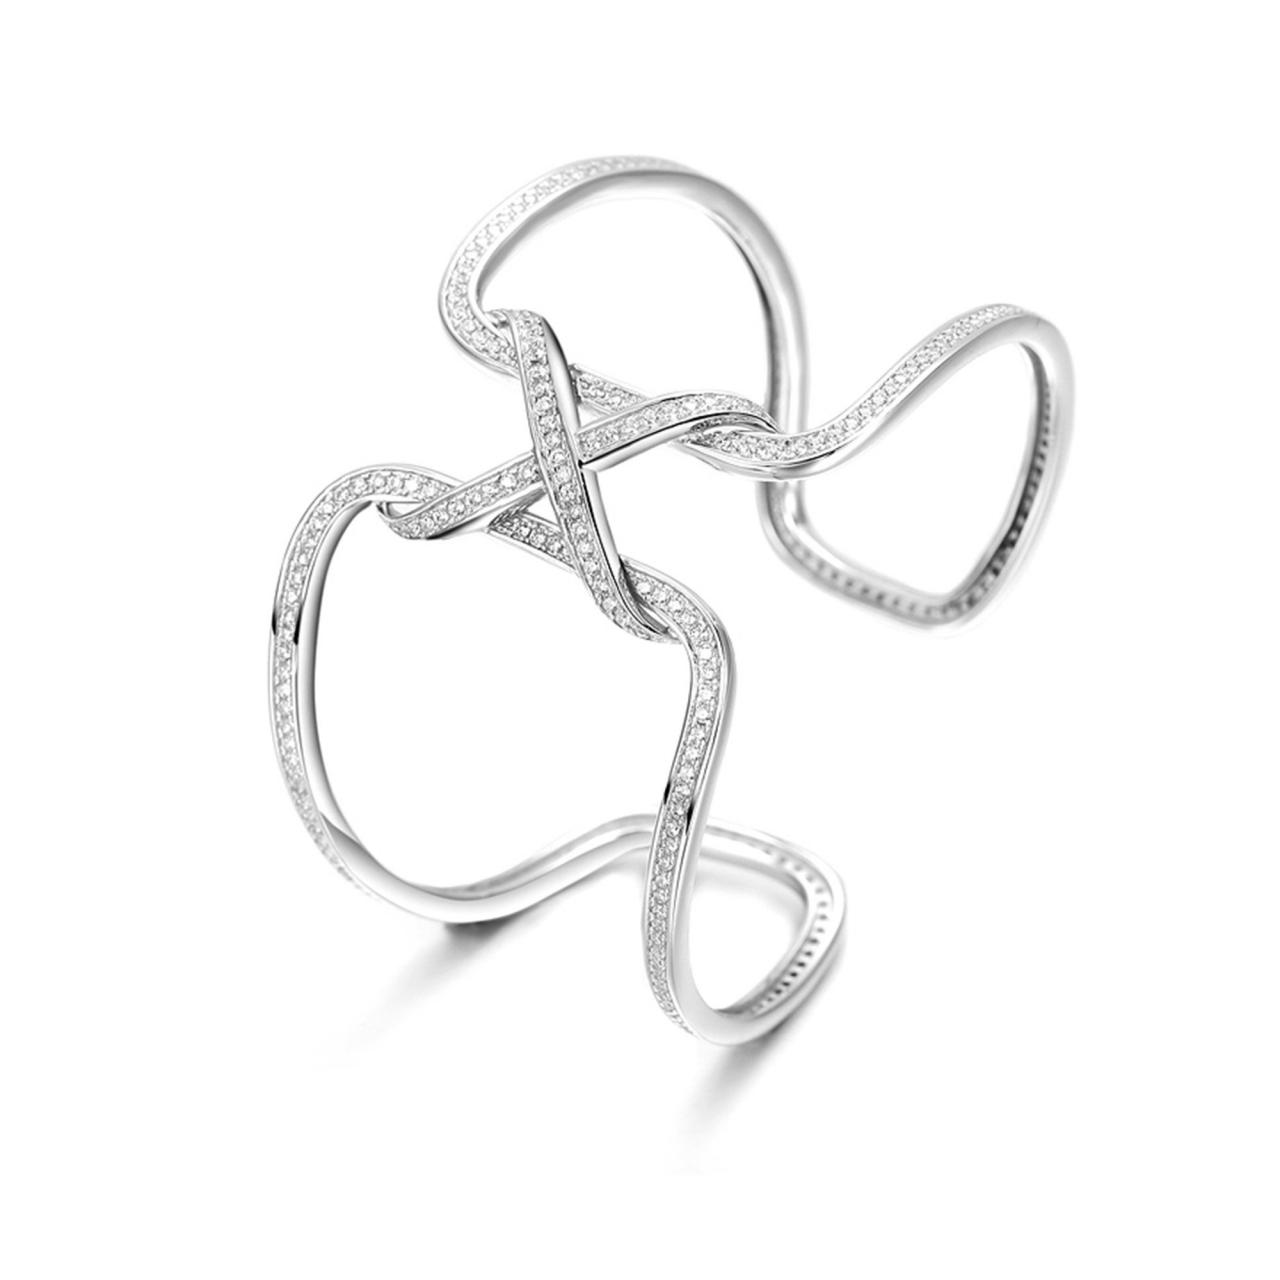 Knot Bracelet / Sterling Silver / Zircon / Silver Cuff / Party Jewelry / Jewelry Gift / Bling / Sterling Silver Cuff / Elegant Bracelet